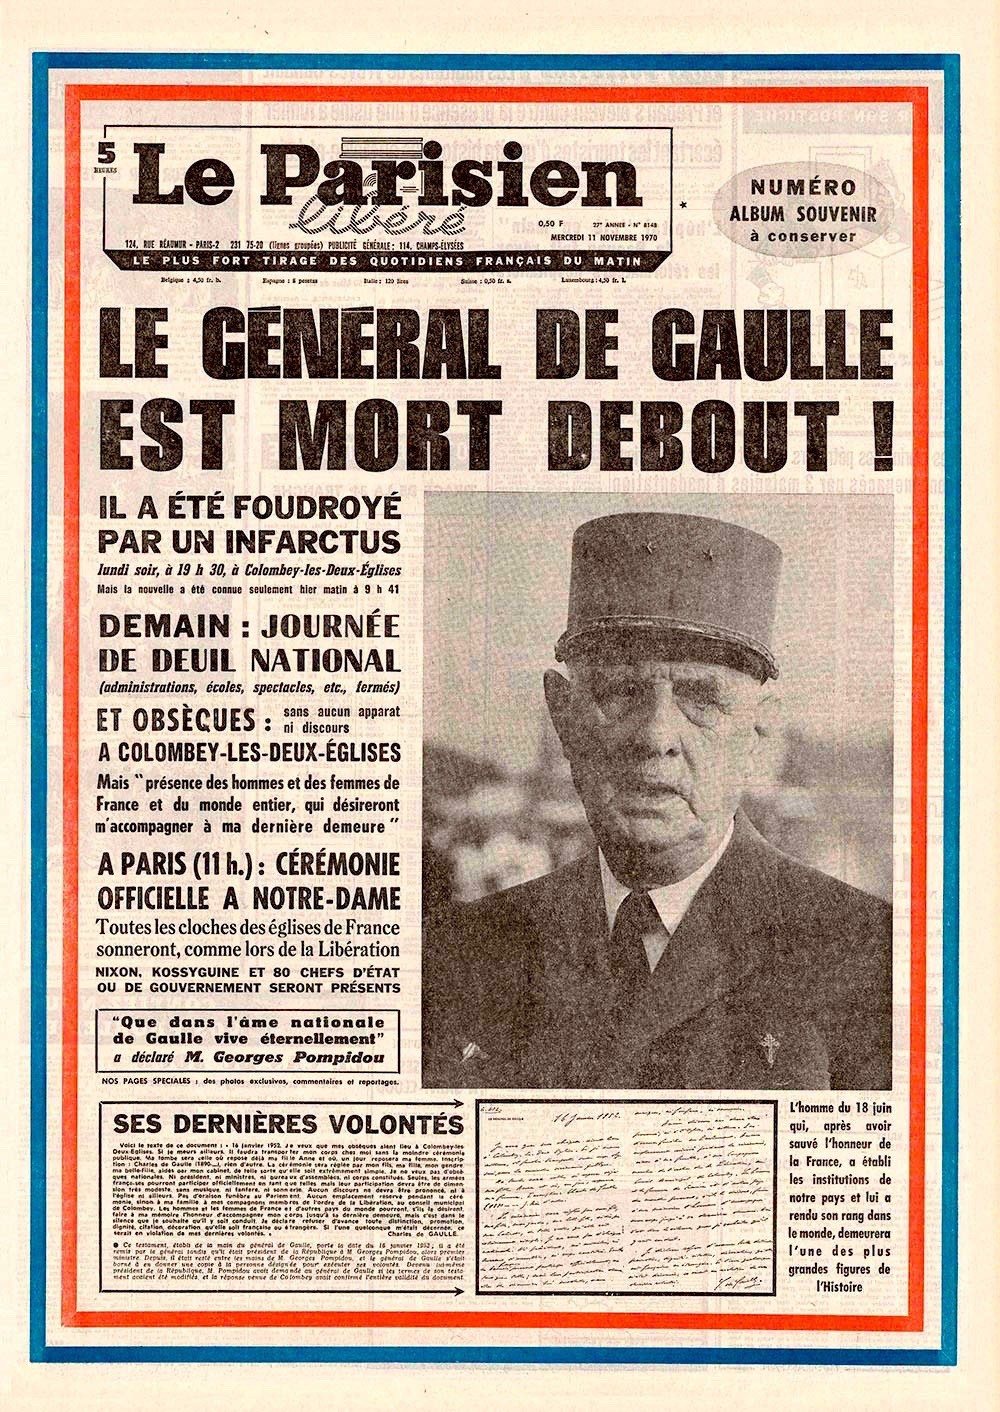 Charles de Gaulle, General, Anführer des Widerstand gegen die Nazis, wurde am 22. November 1890 geboren. Von Januar 1959 bis April 1969 war er Staatspräsident der 5. französischen Republik. 